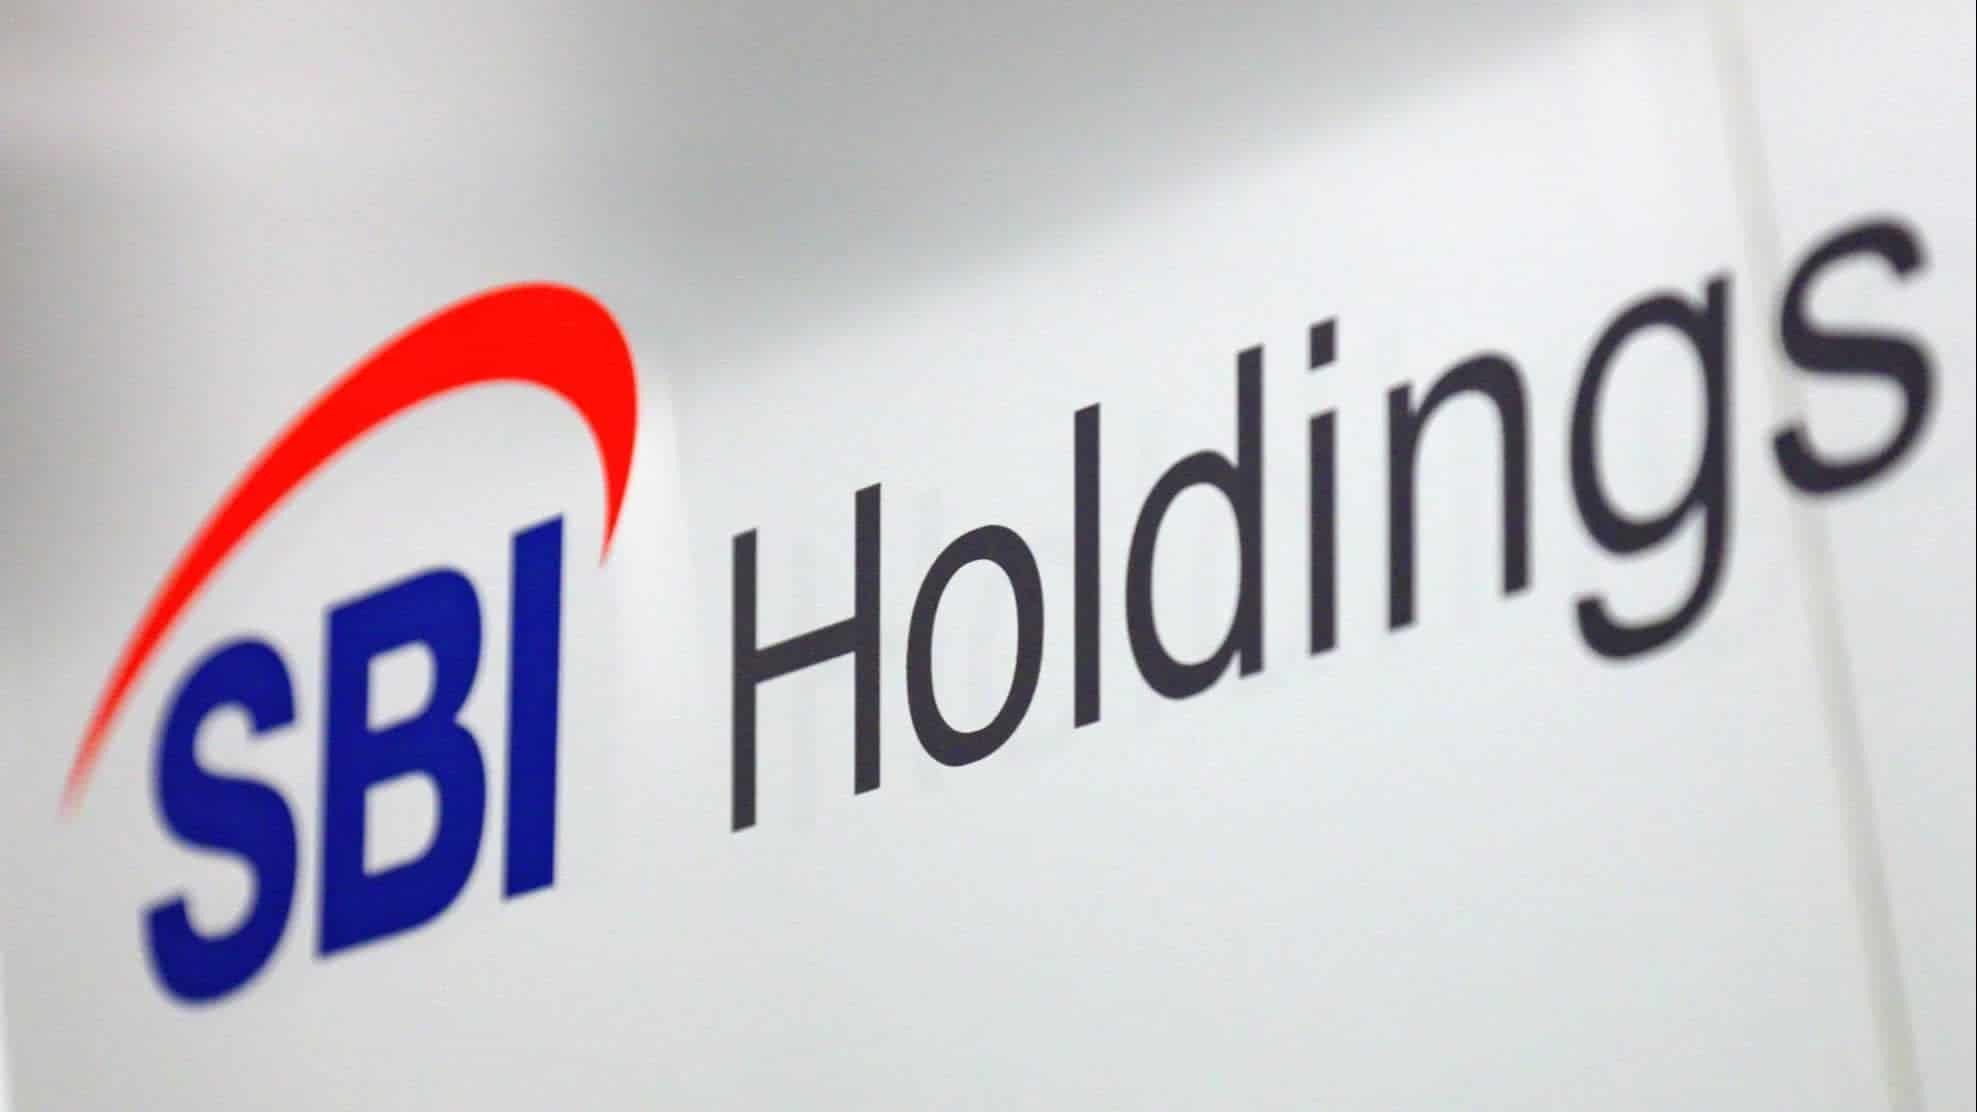 SBI Holding Rusyadaki Faaliyetlerini Durduracak